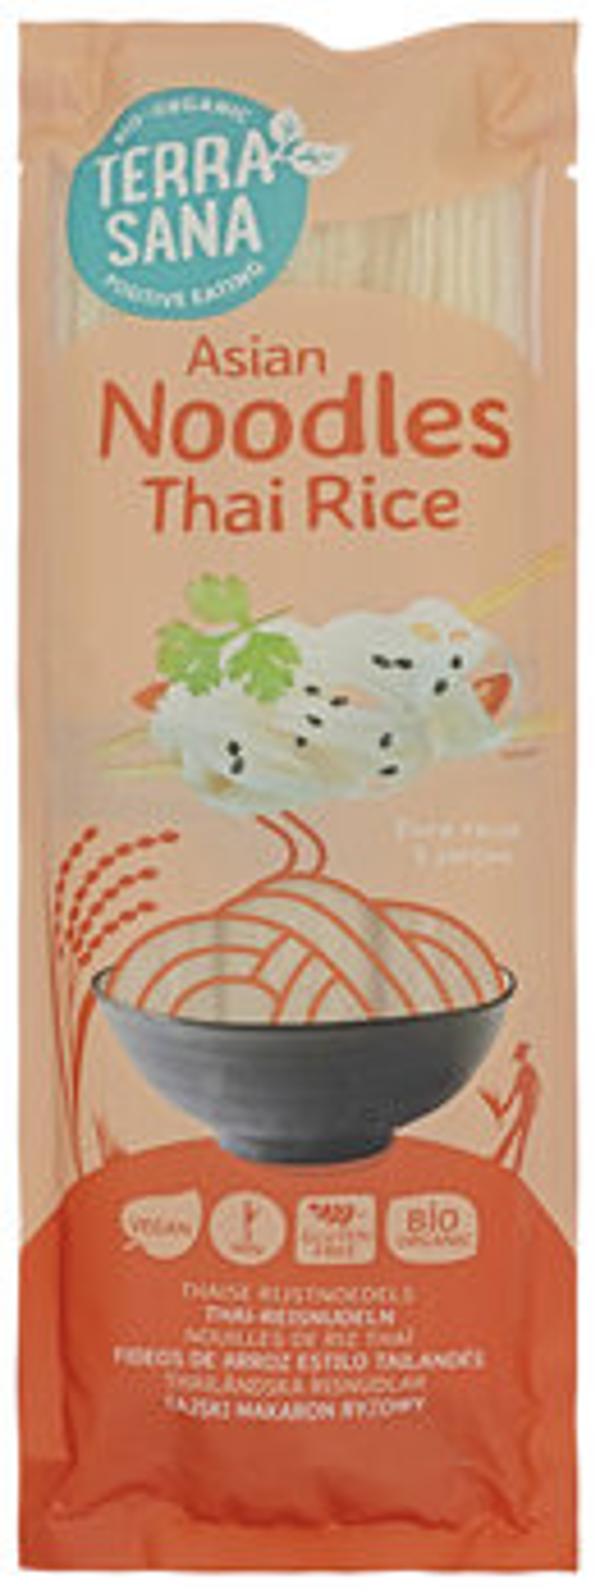 Produktfoto zu Asiatische Reisnudeln 250g